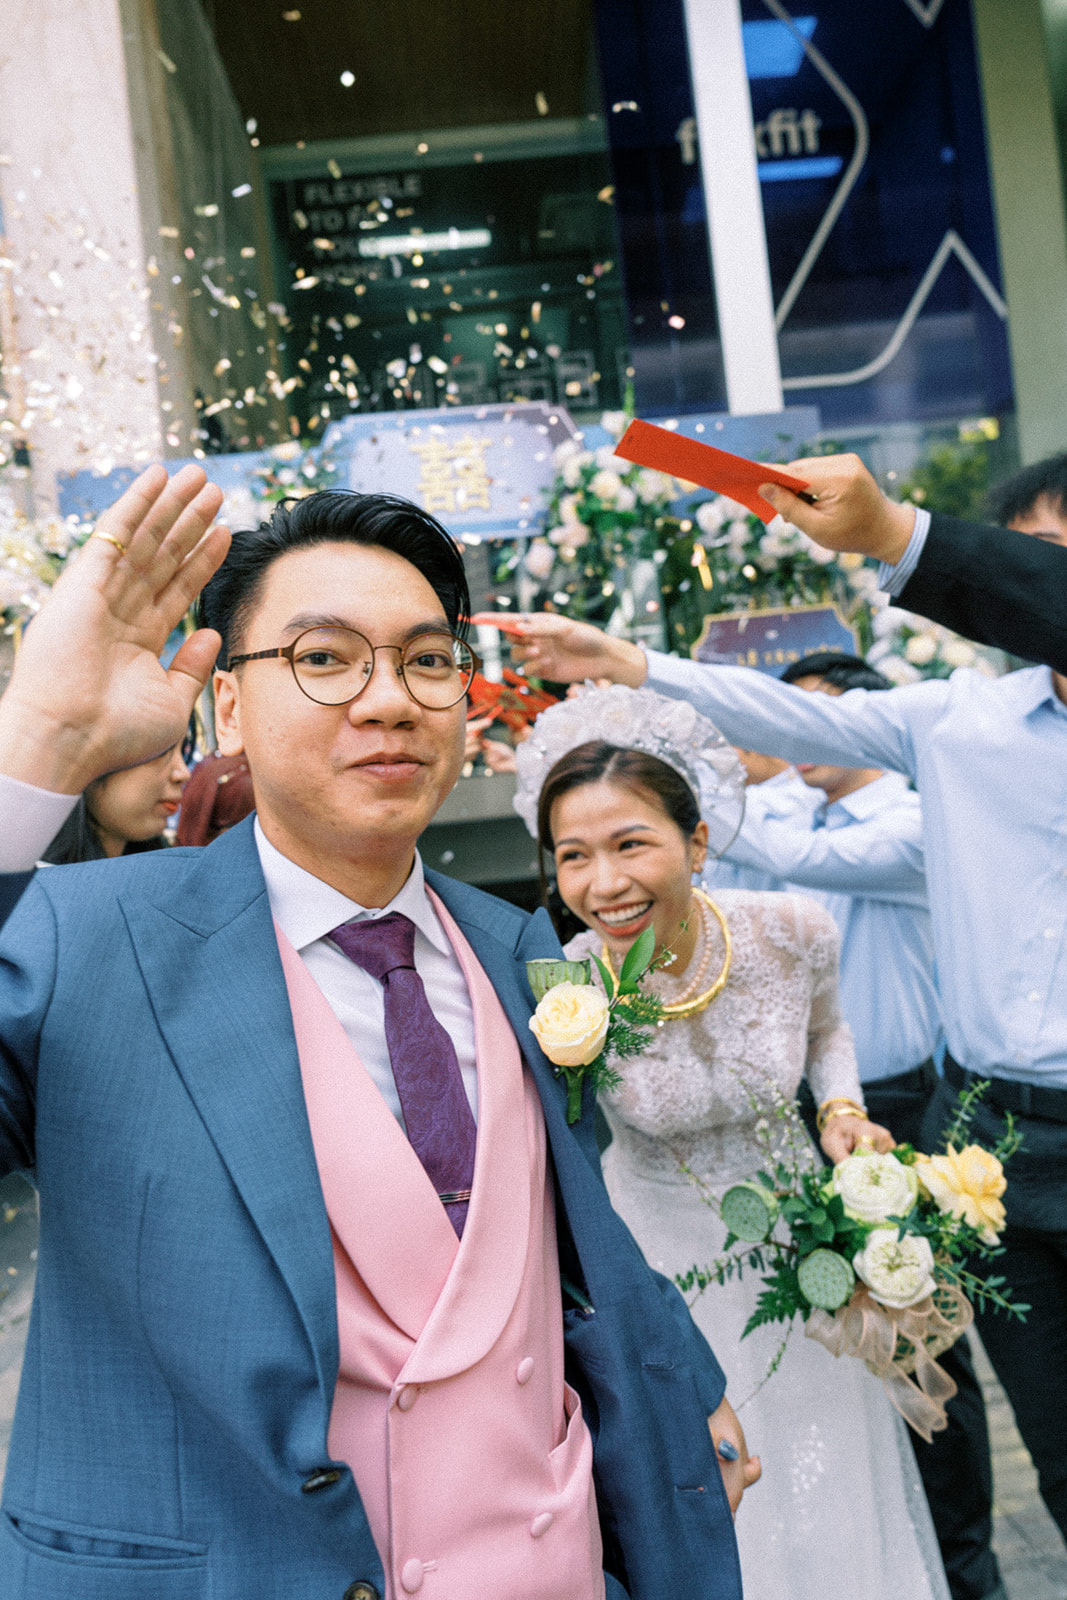 Fun moments in Vietnamese wedding Saigon